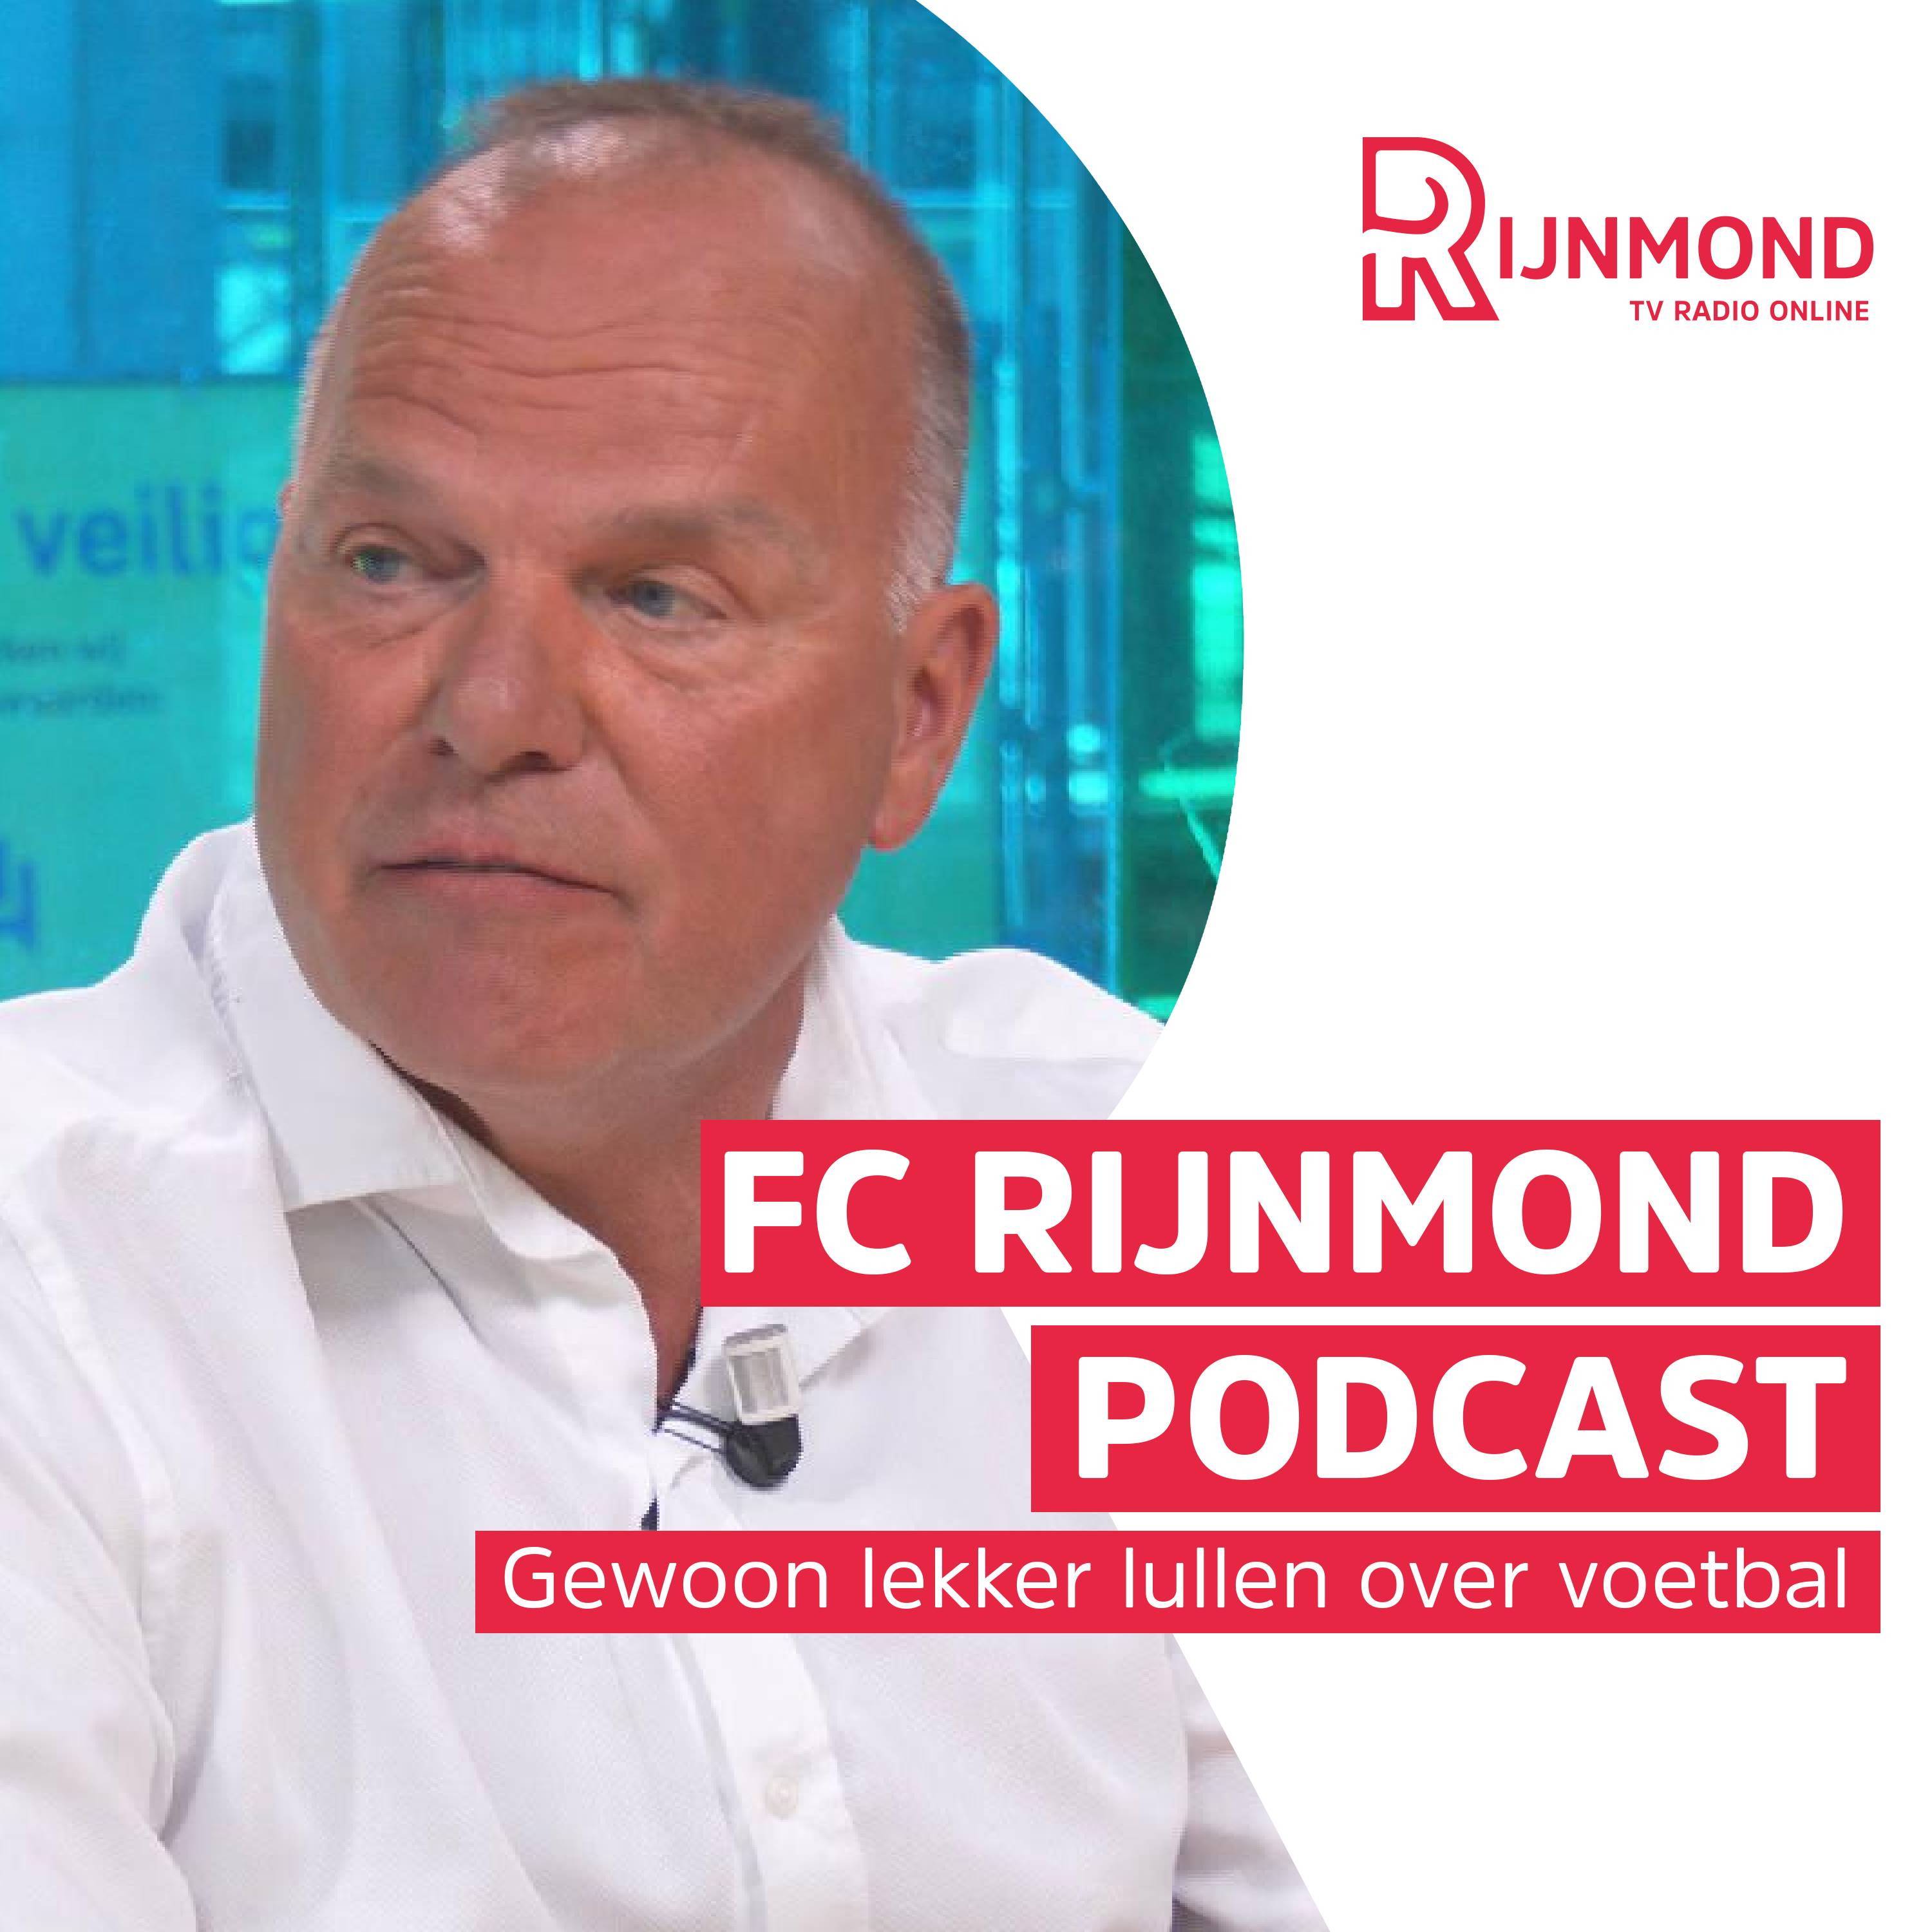 FC Rijnmond Podcast | Van Stee over blessure Bijlow: ‘liever een veldspeler erbij dan een keeper’